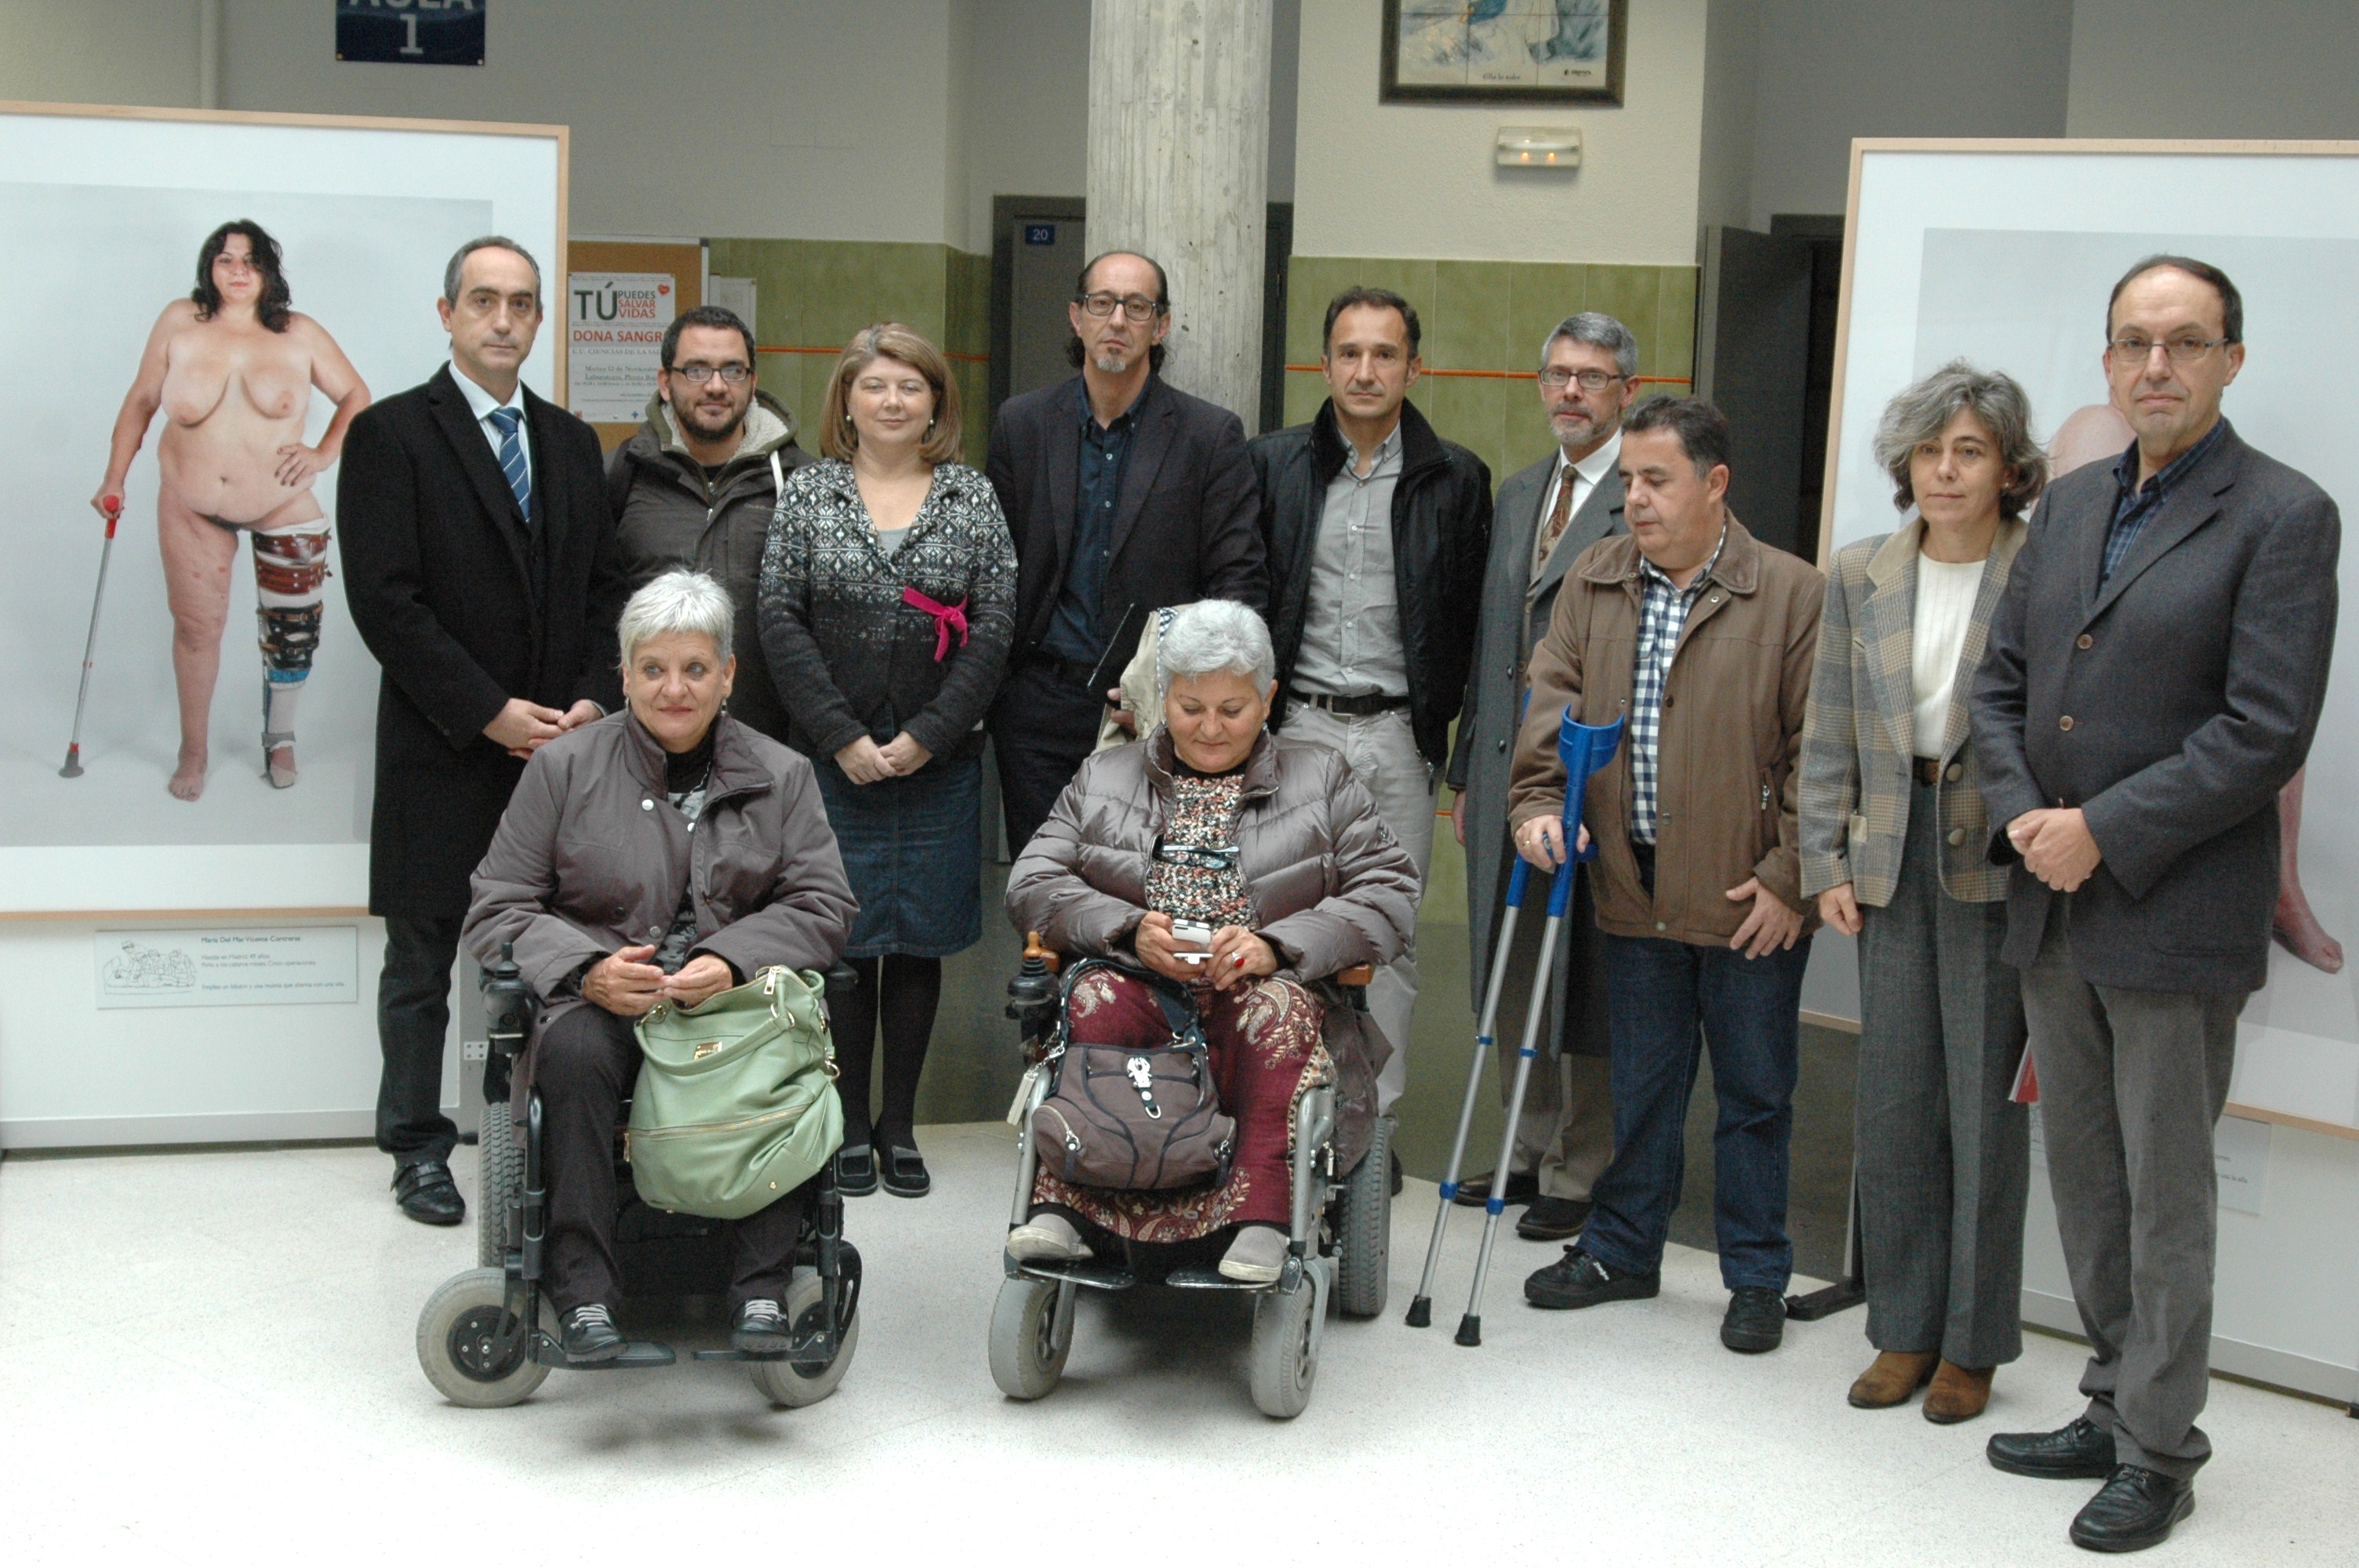 La Universidad de León acoge la exposición sobre la poliomielitis en la Península Ibérica, del investigador de la Usal Juan Antonio Rodríguez Sánchez y el fotógrafo Bernat Millet